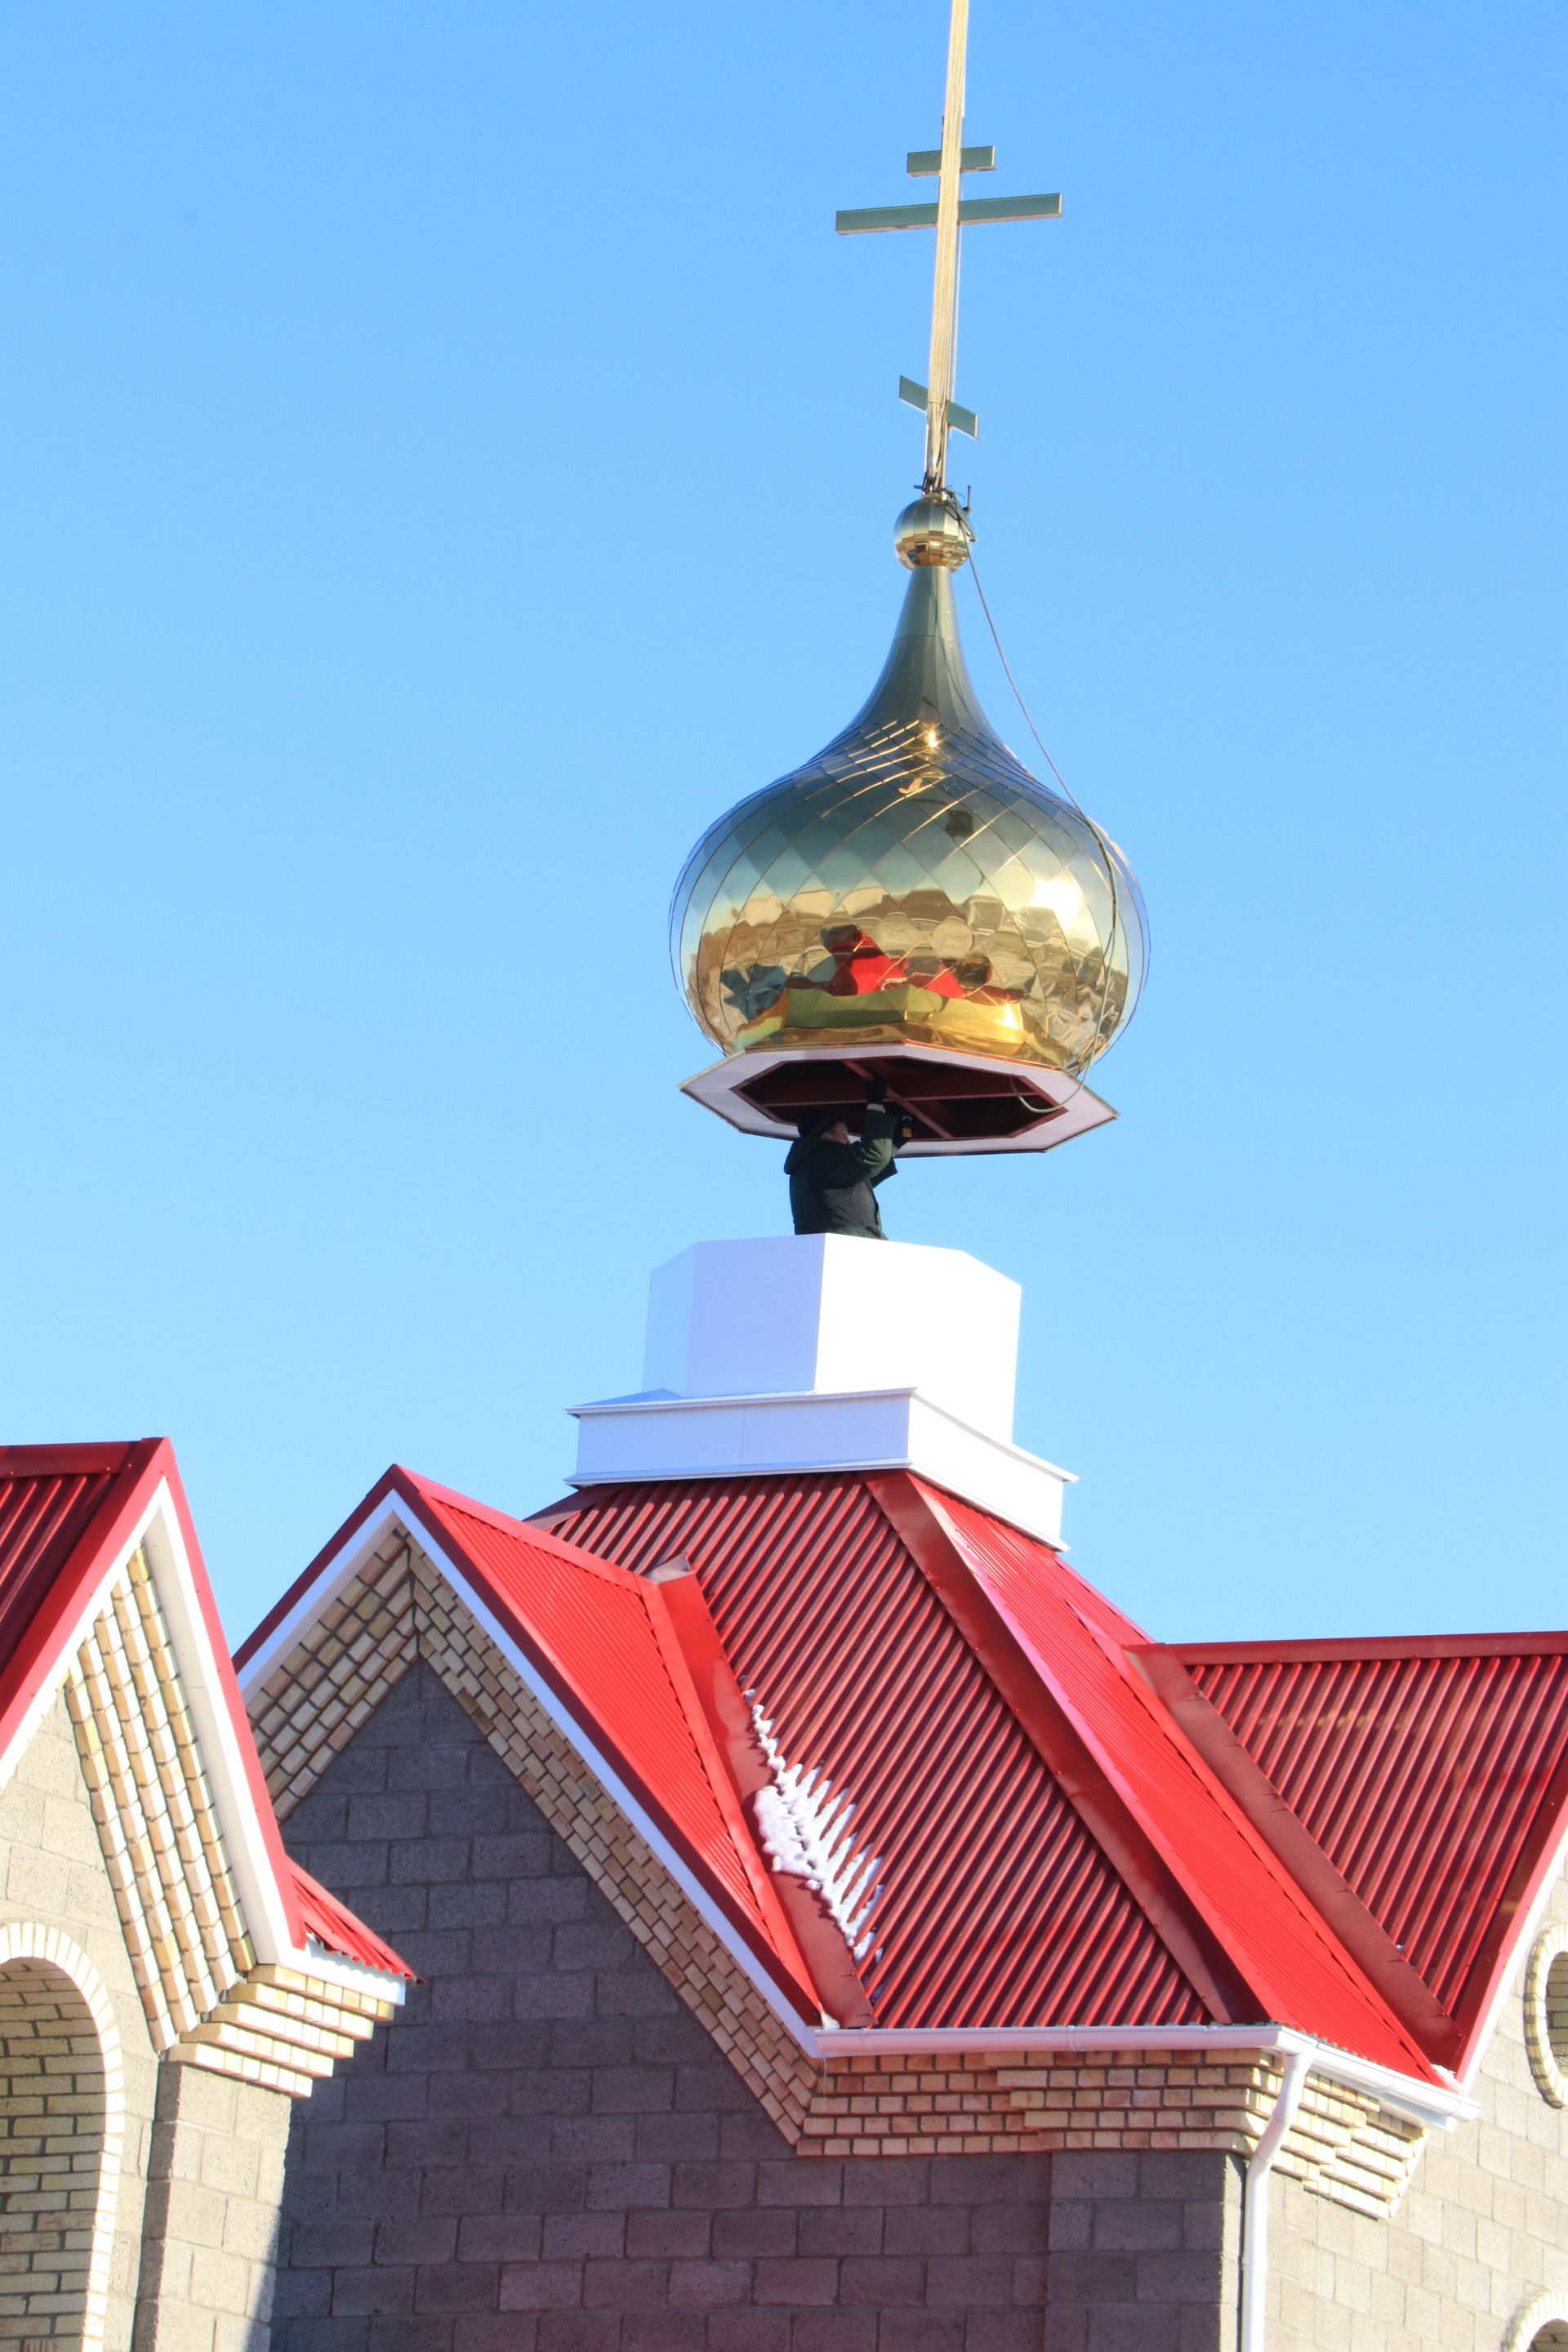 Возведены купола на церковь, строящуюся в селе Ютаза 